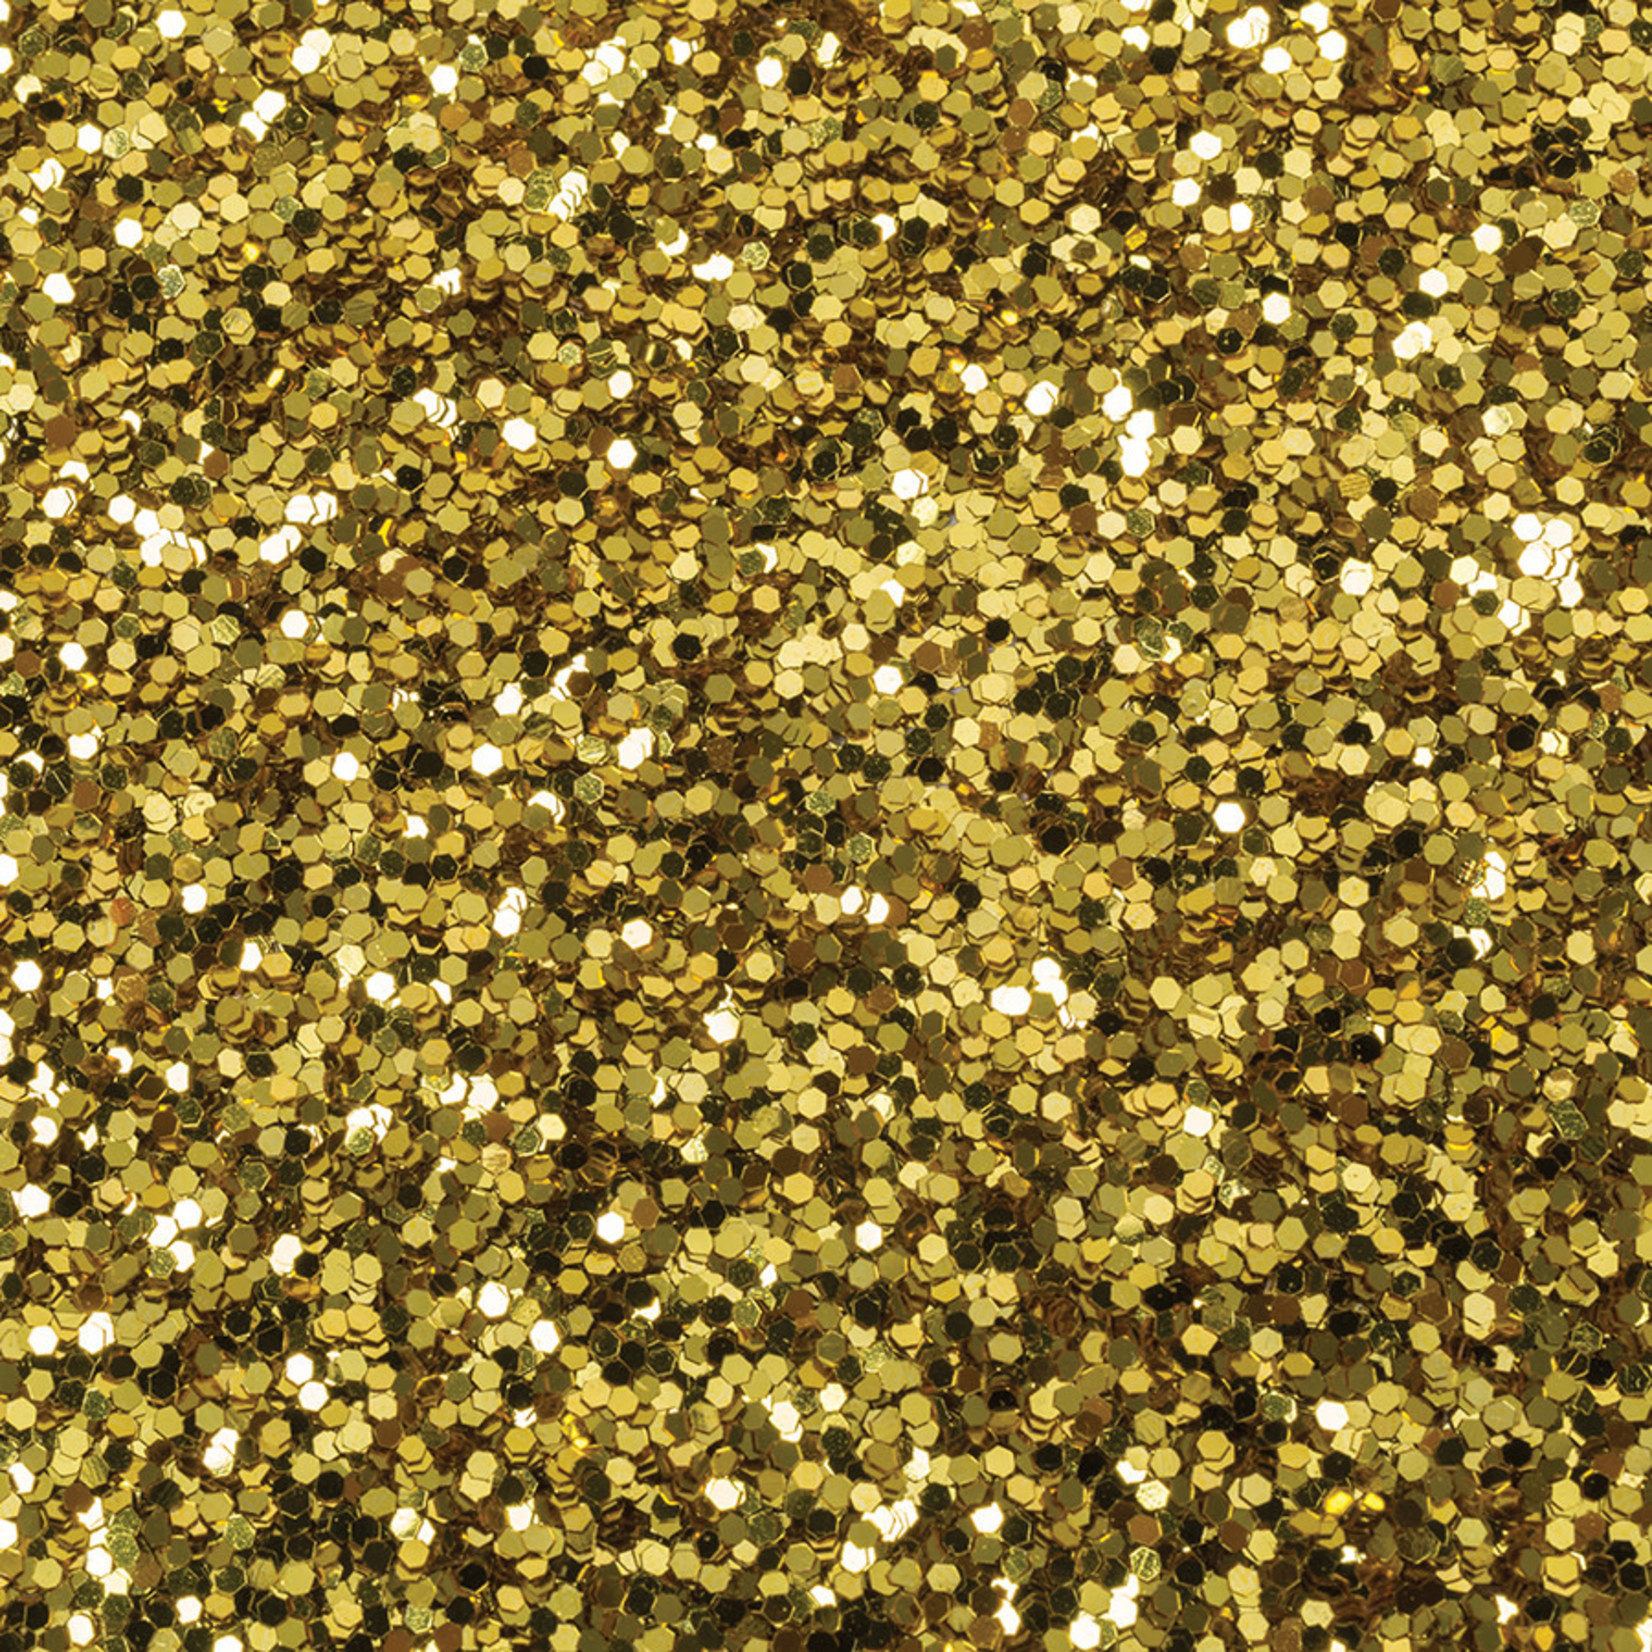 DIXON TICONDEROGA COMPANY Spectra® Glitter Gold